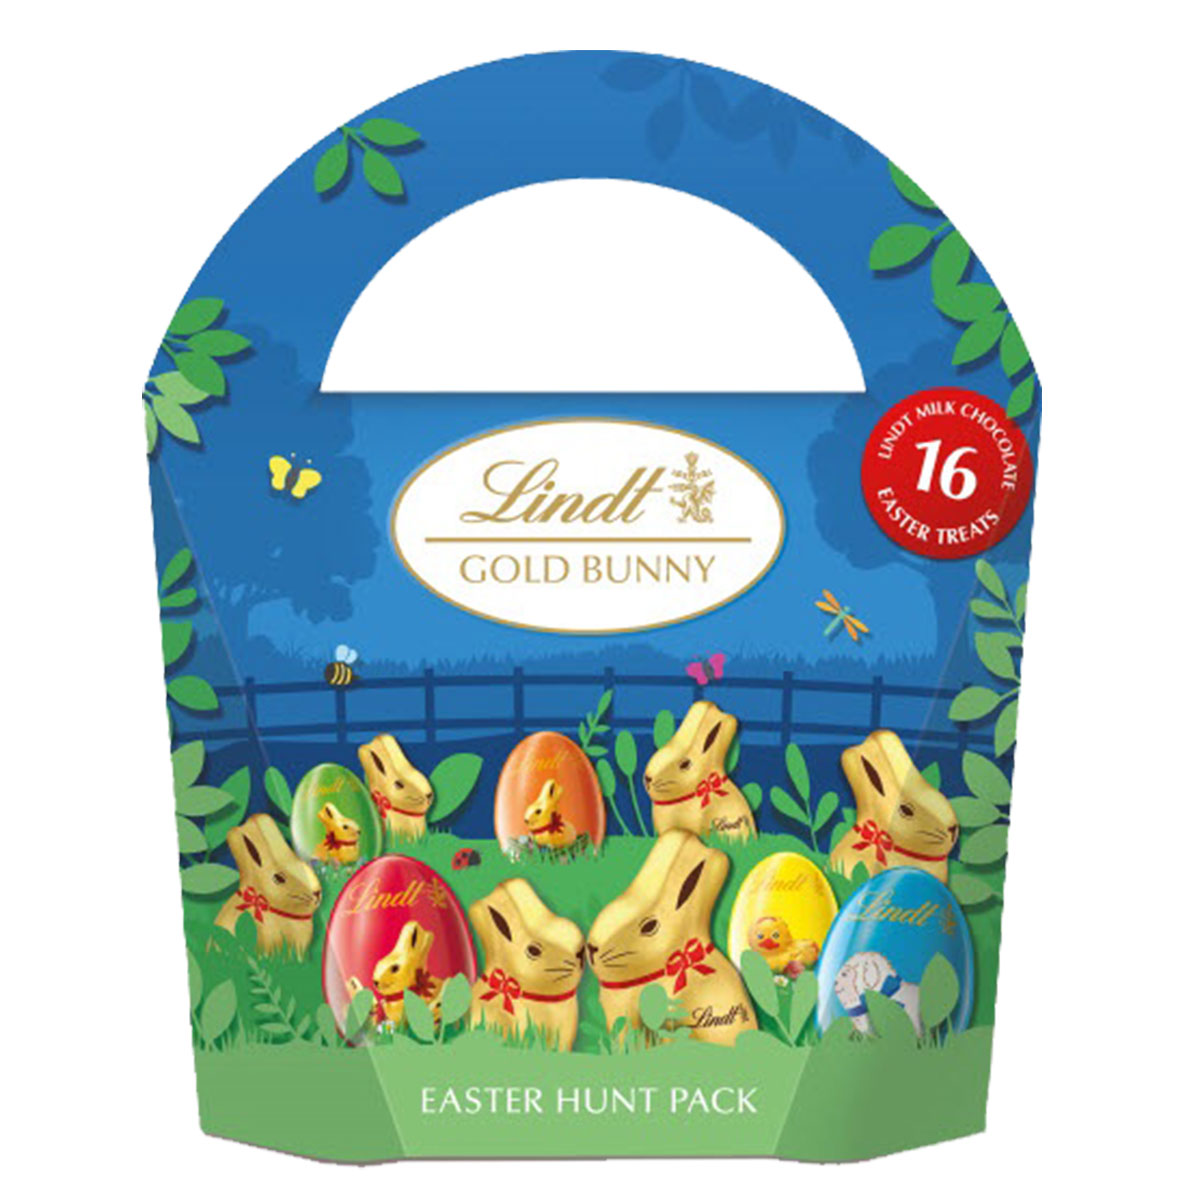 Lindt Gold Bunny Easter Egg Hunt Pack